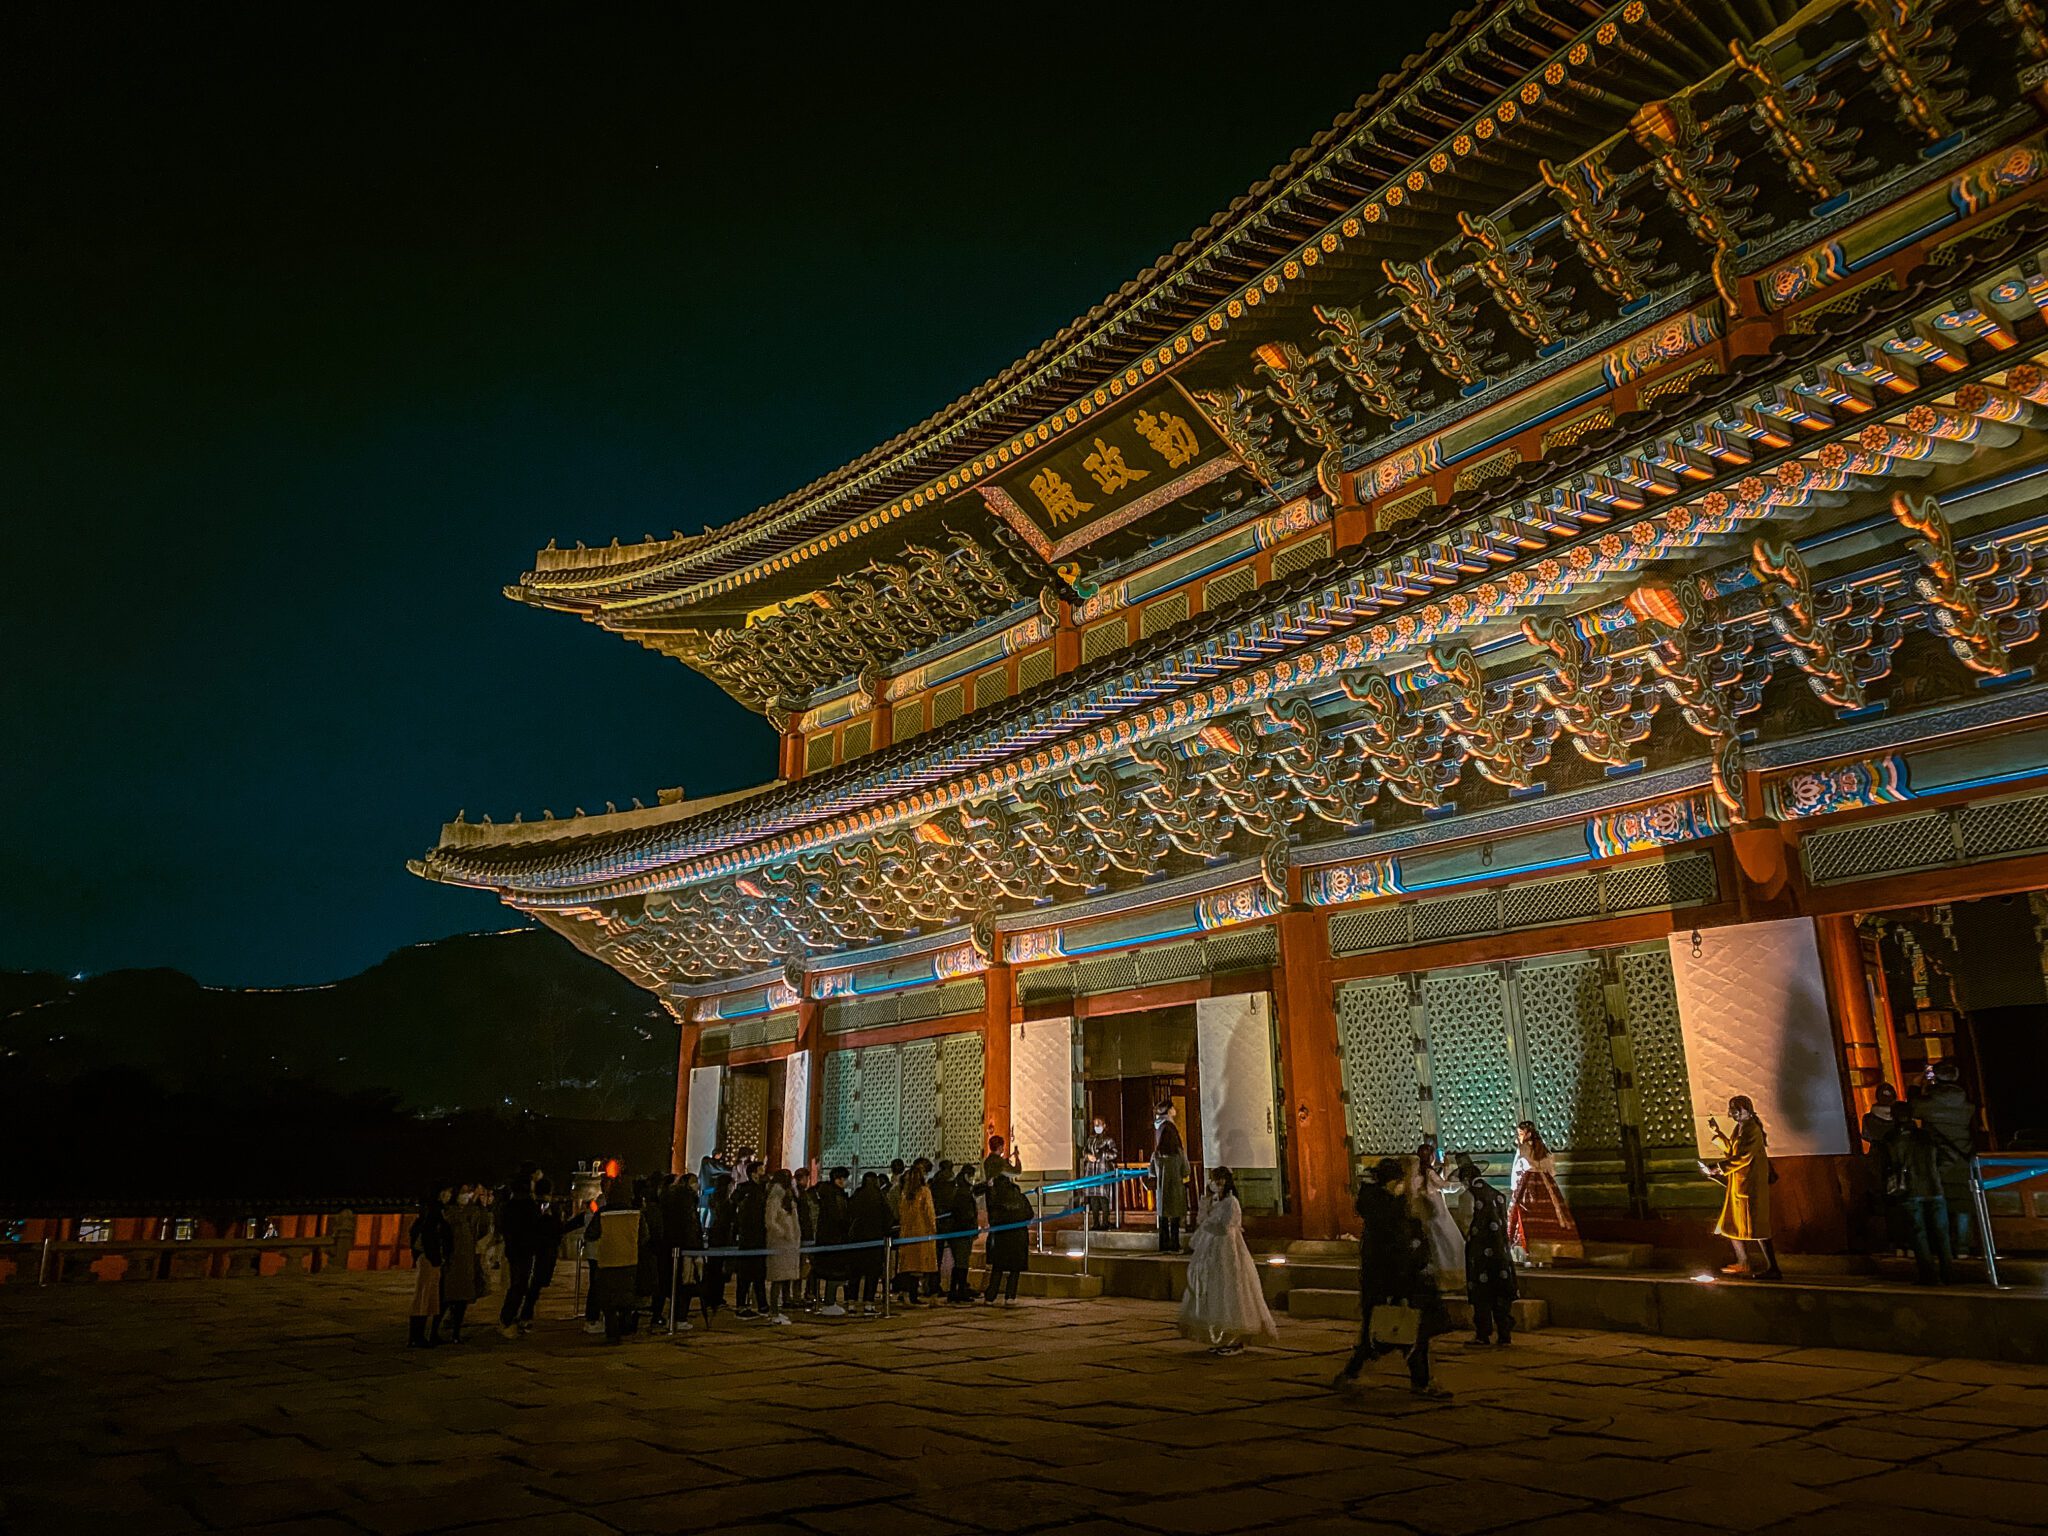 gyeongbokgung palace at night